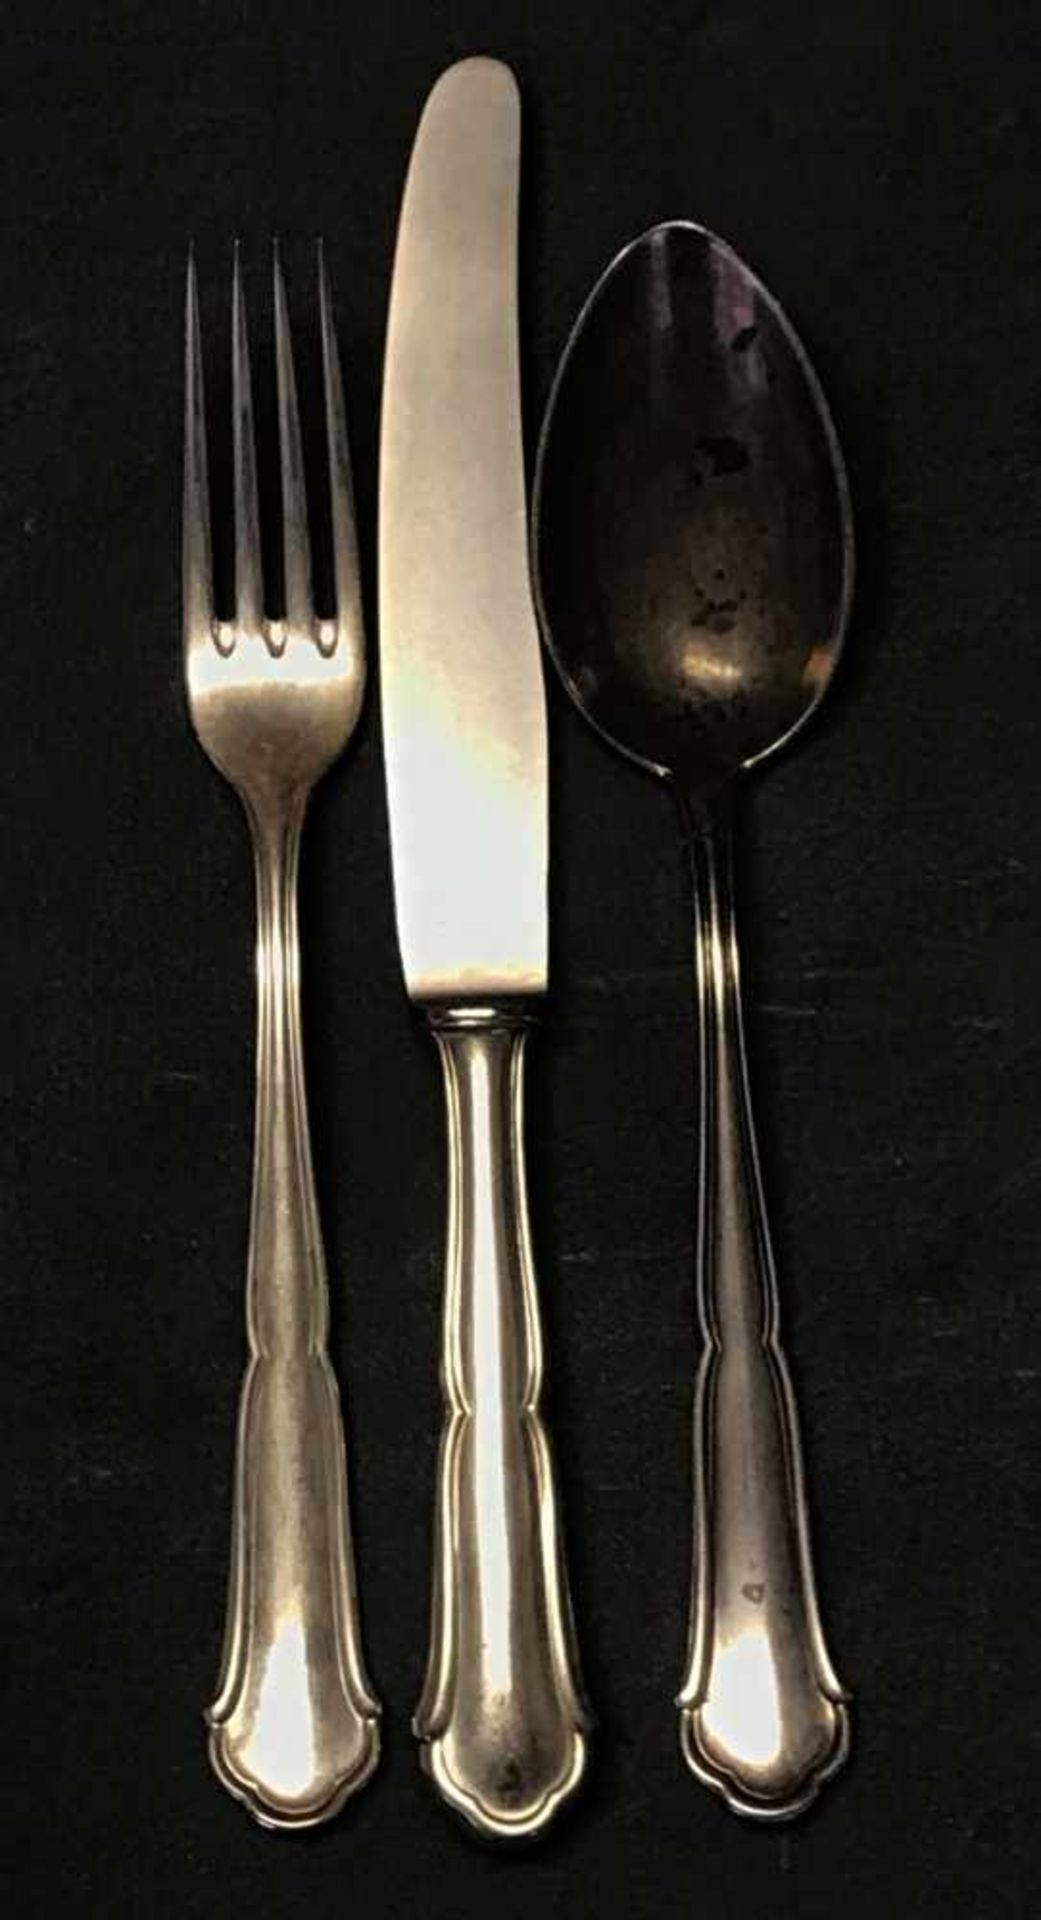 12 x Bestecke, 800er Silber, bestehend aus: 12 Gabeln, 12 Messer und 12 Esslöffel, 1088 g nur - Image 2 of 2